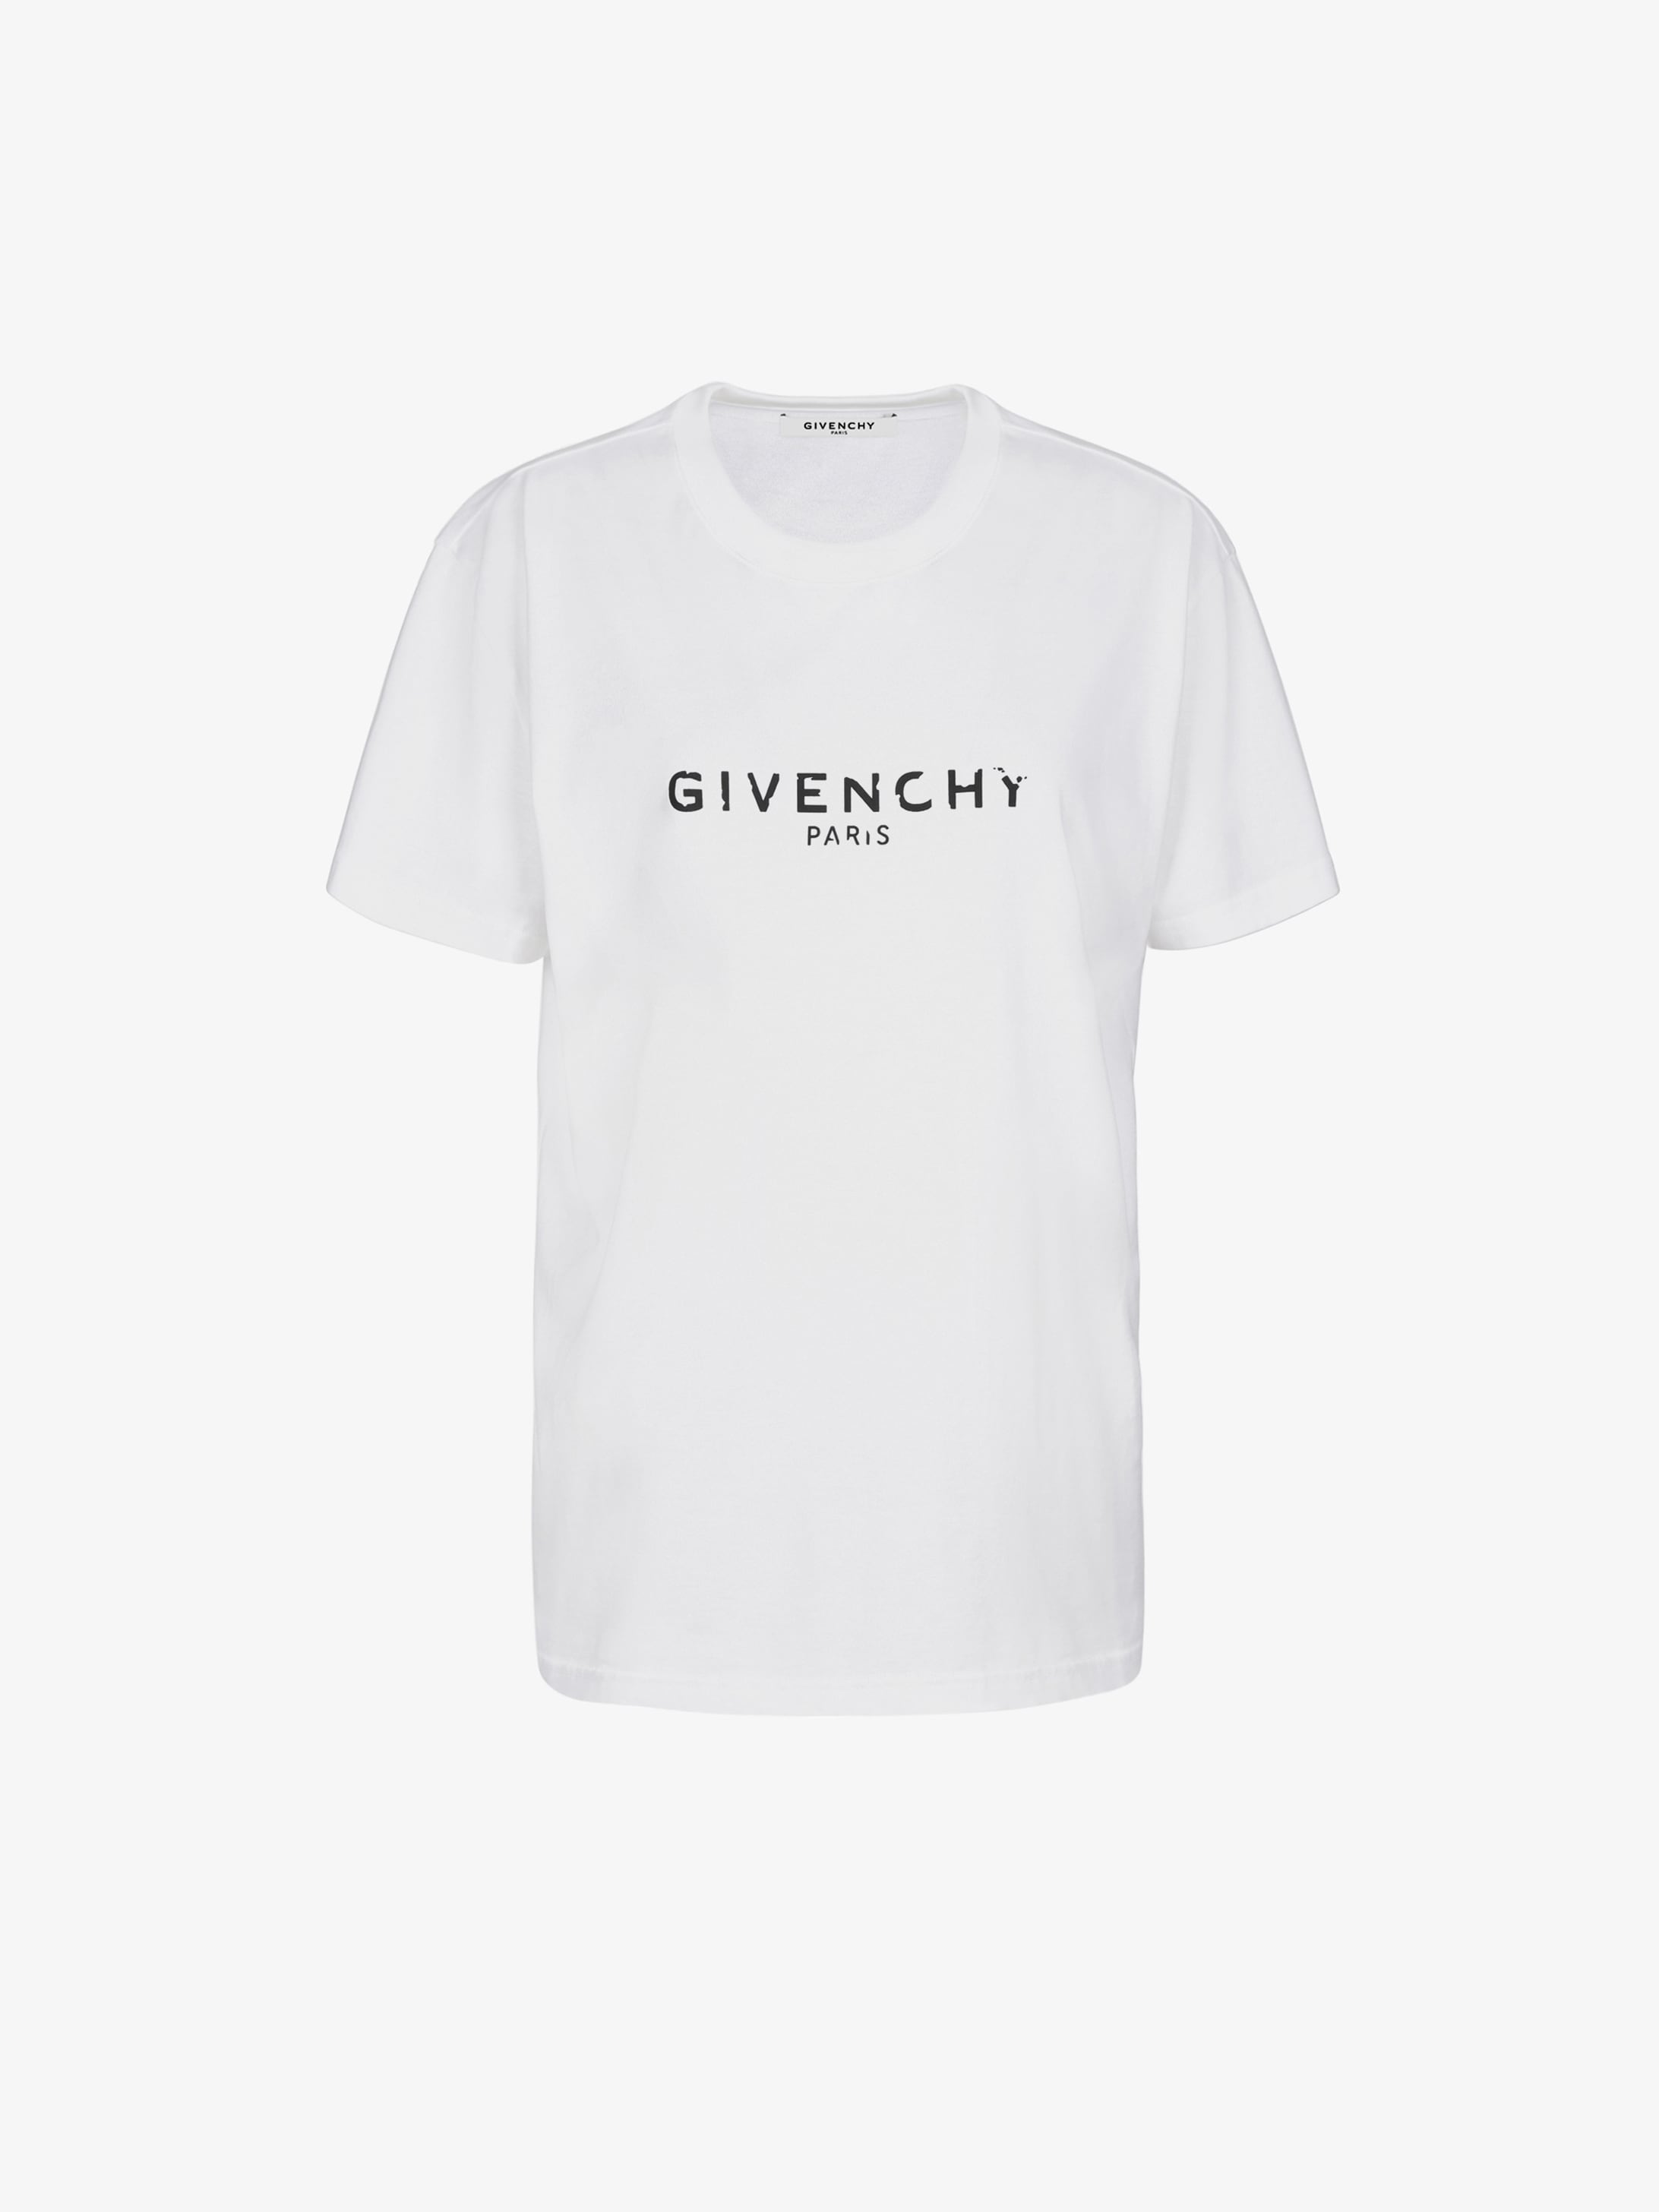 Vintage GIVENCHY PARIS oversized T-shirt | GIVENCHY Paris